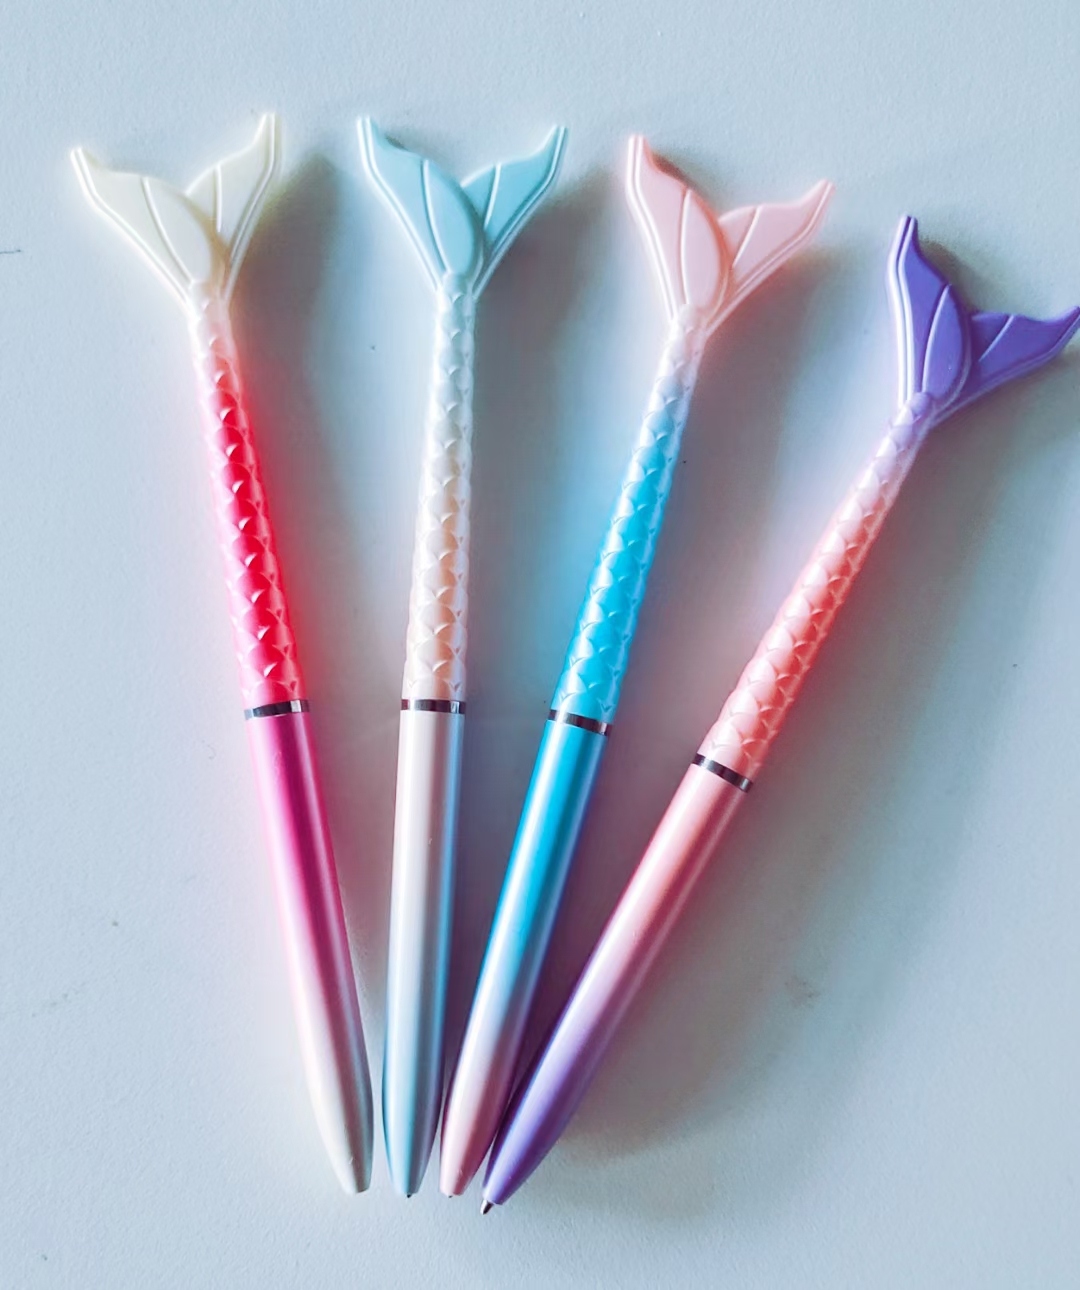  Uv New modeling pen UV Mermaid craft pen lovely advertising gift pen